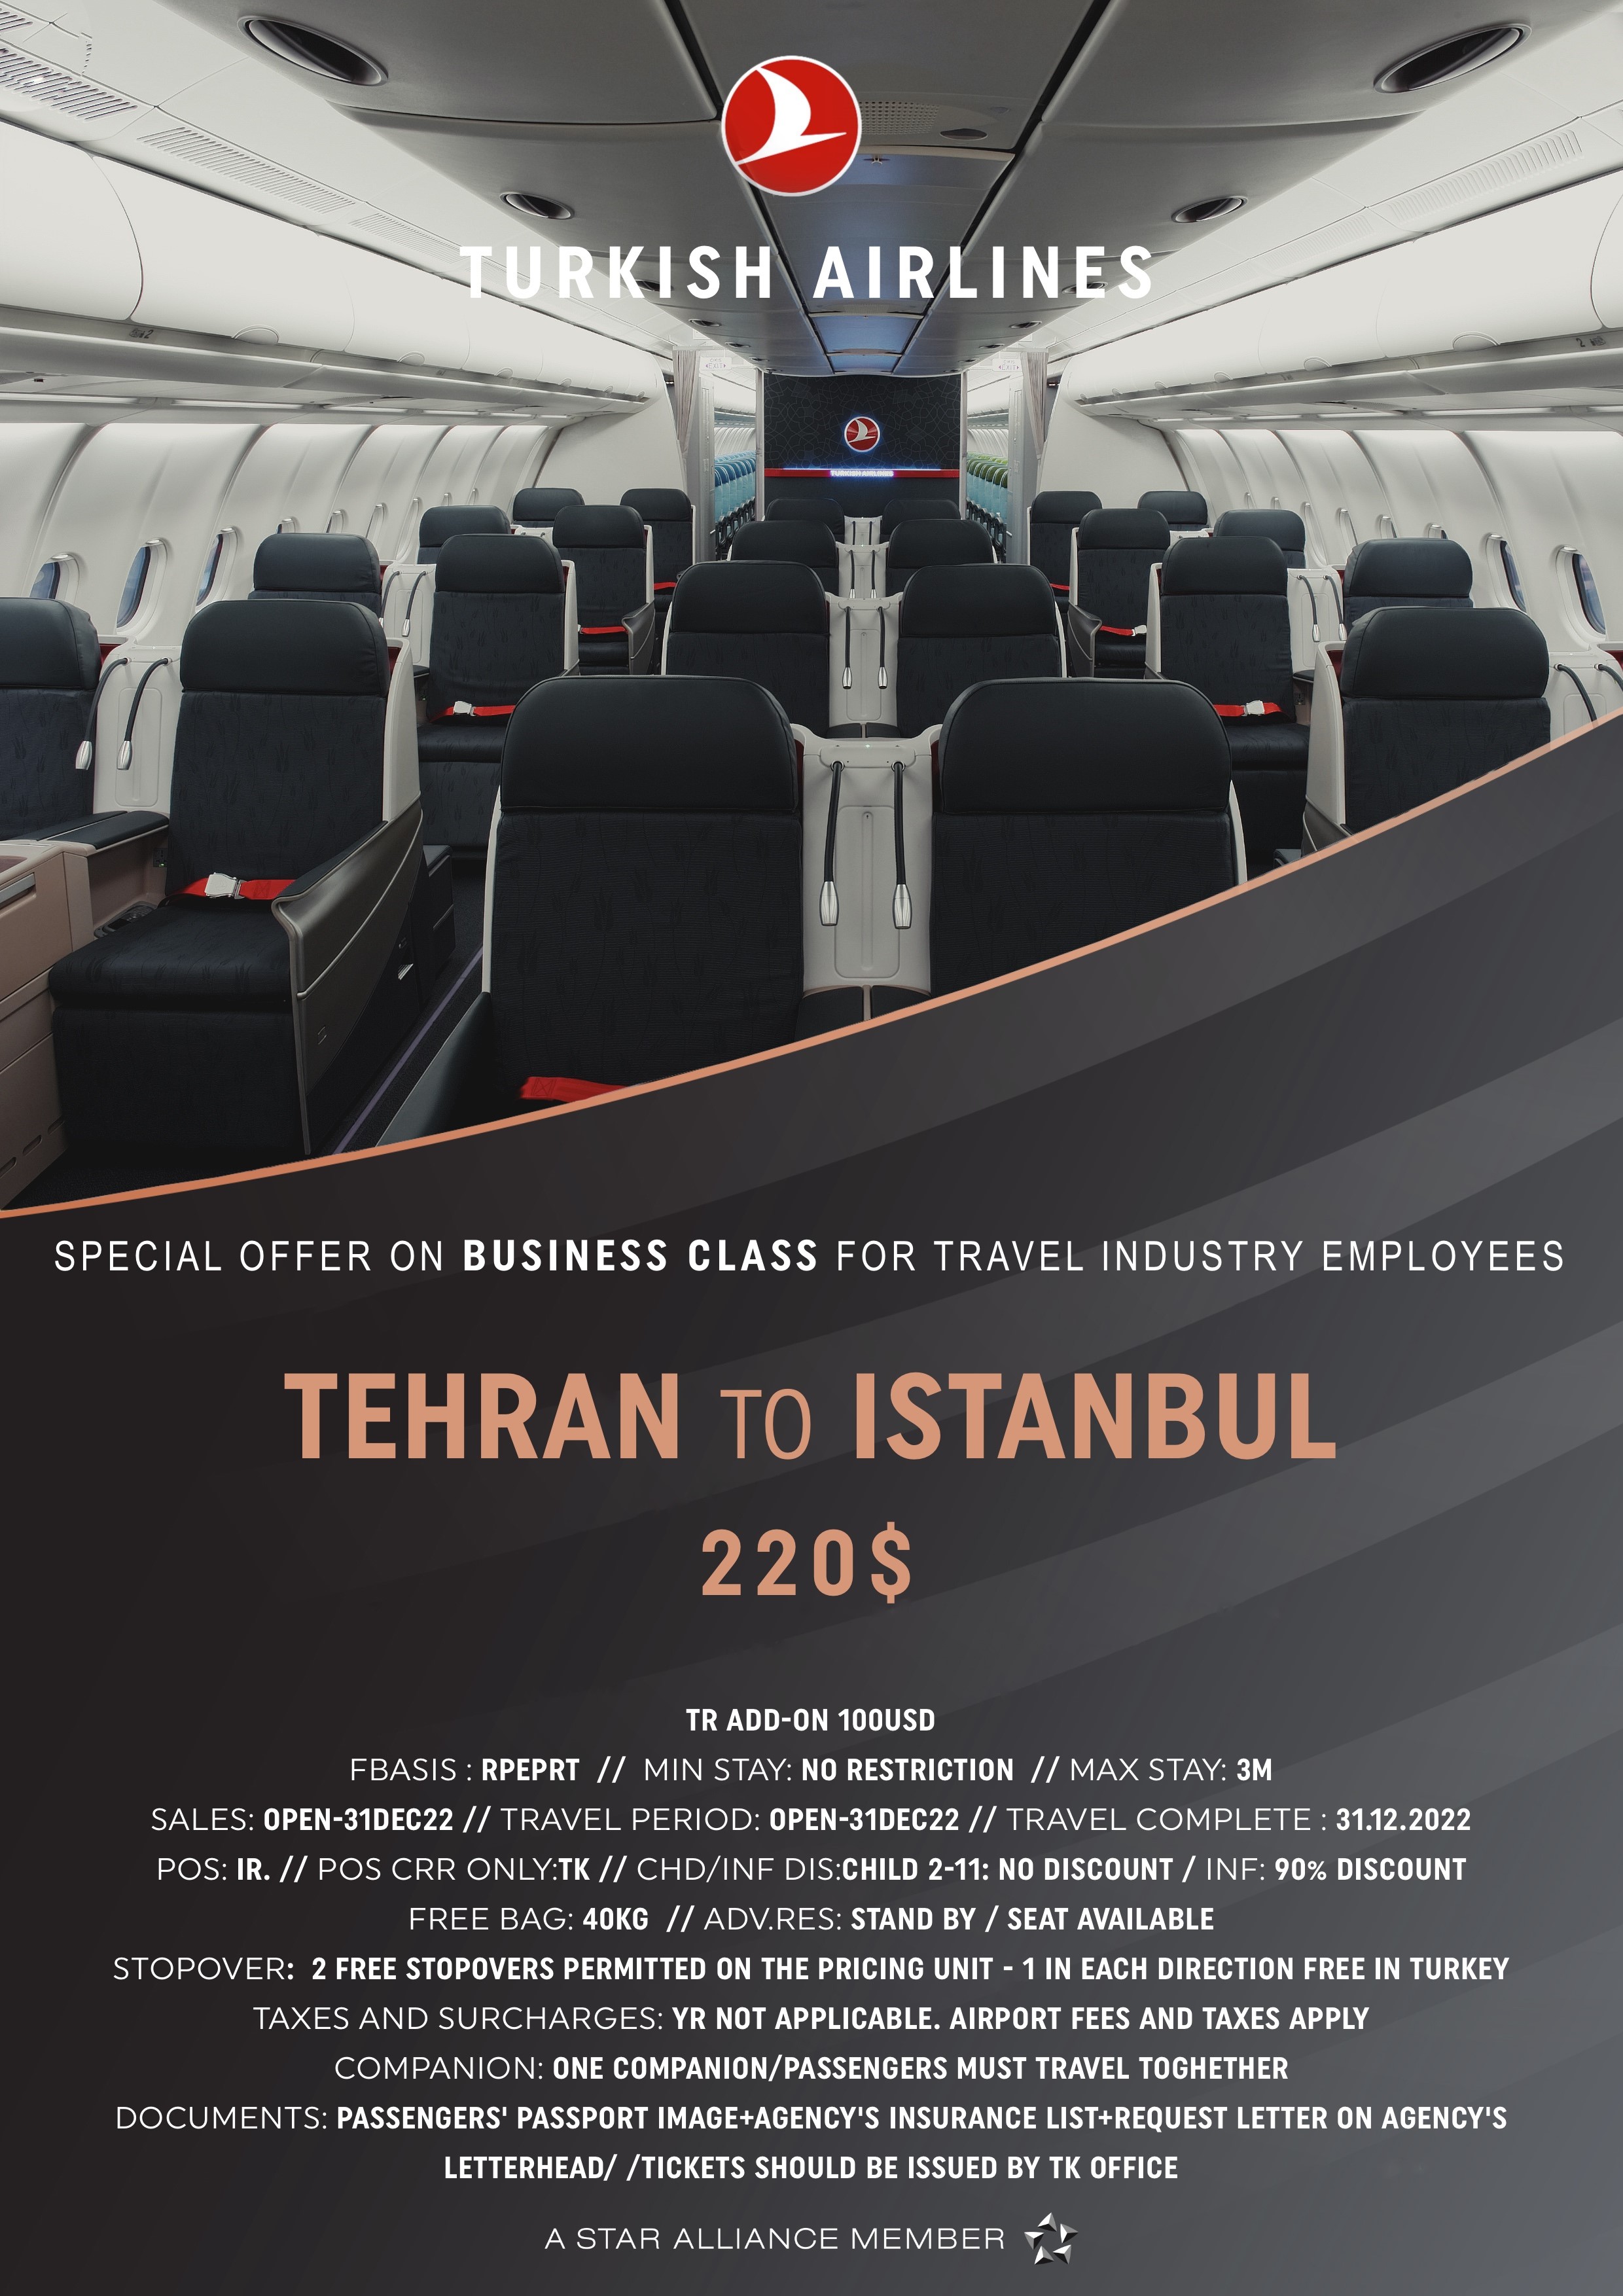 بخشنامه و اطلاعیه   هواپیمایی ترکیش درباره  نرخ های ویژه کلاس بیزینس برای کارمندان صنعت گردشگری از تهران به استانبول تا تاریخ 31 دسامبر2022